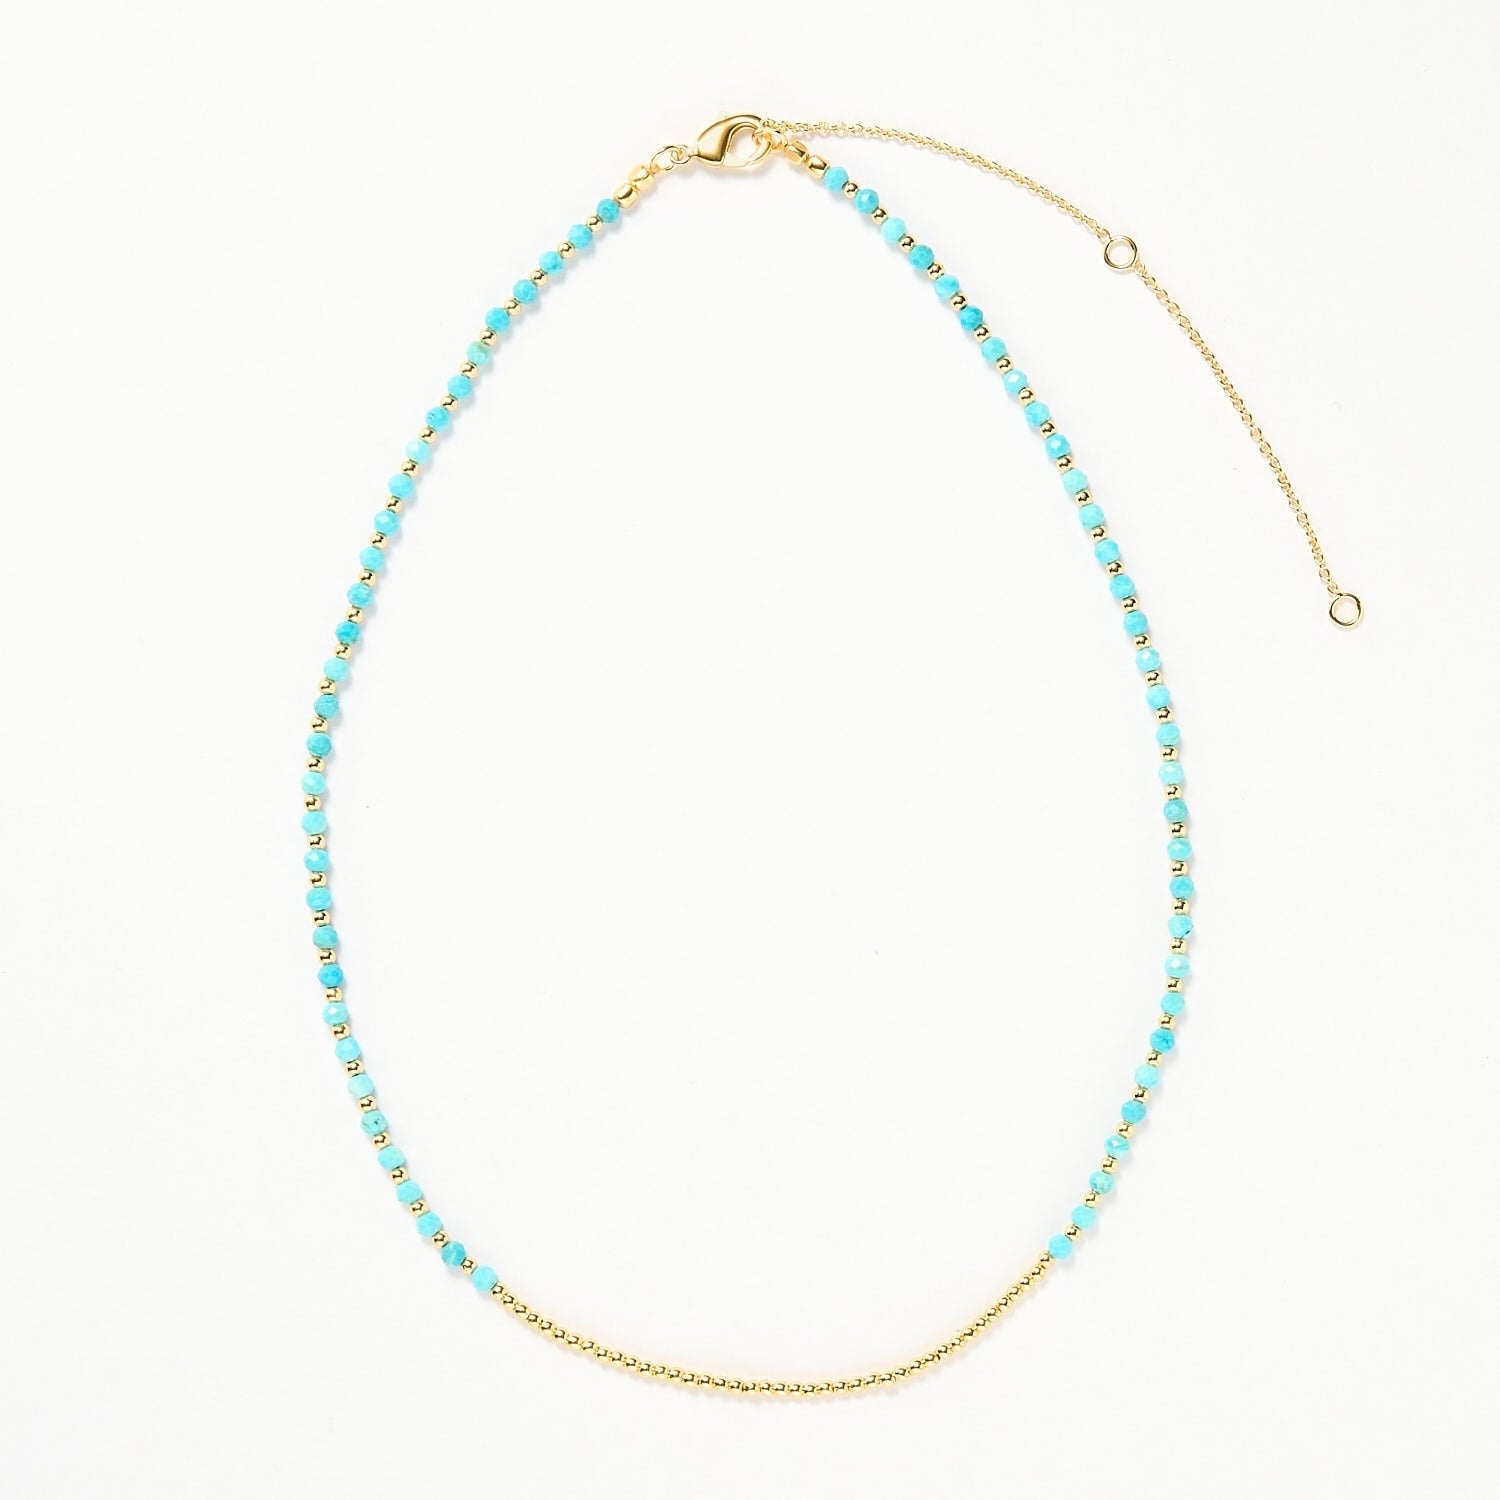 Ibiza beaded necklace - Turquoise, Gold 